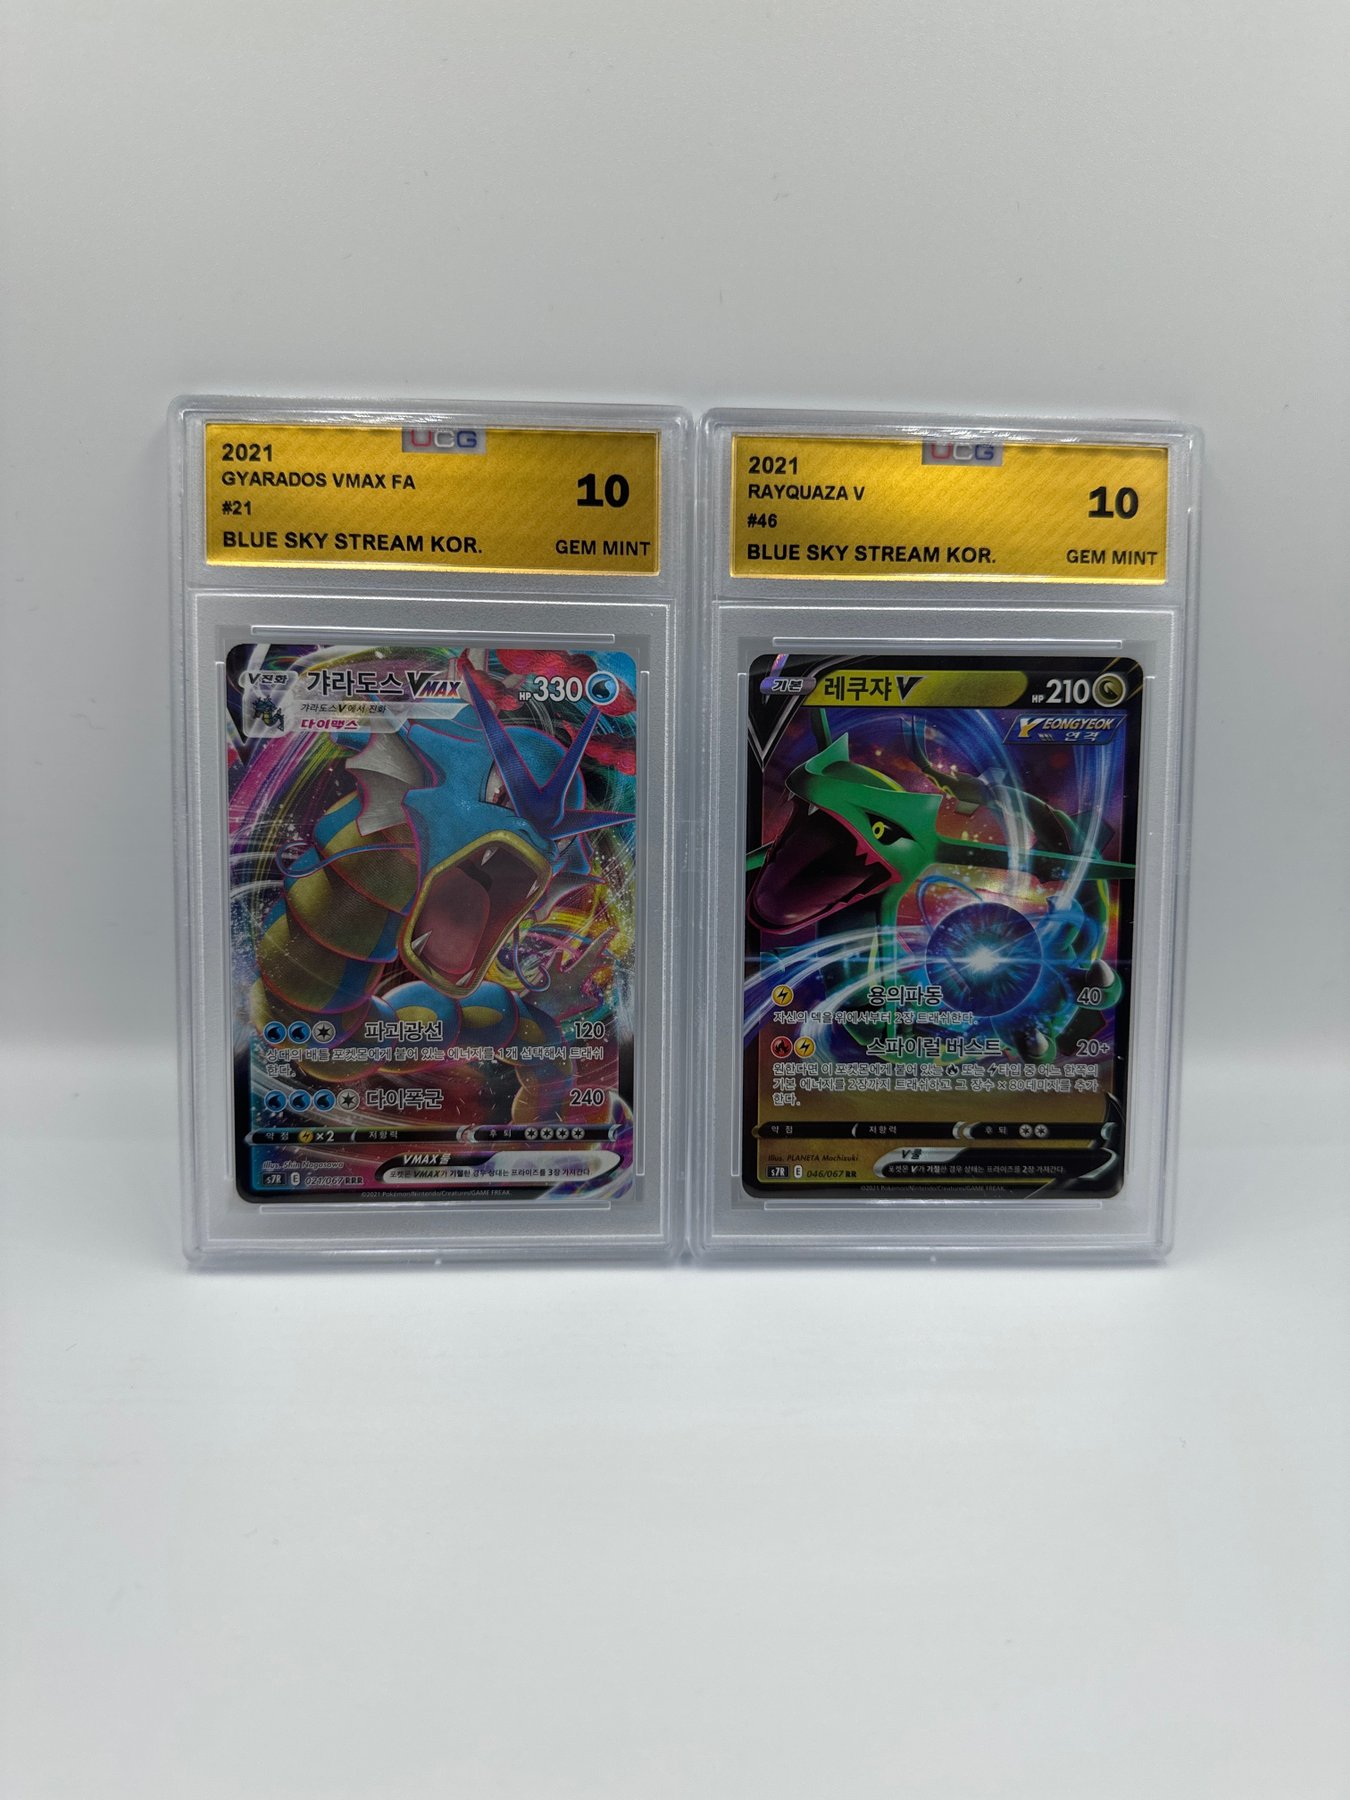 Preços baixos em Rayquaza Pokémon TCG raros colecionáveis jogos de